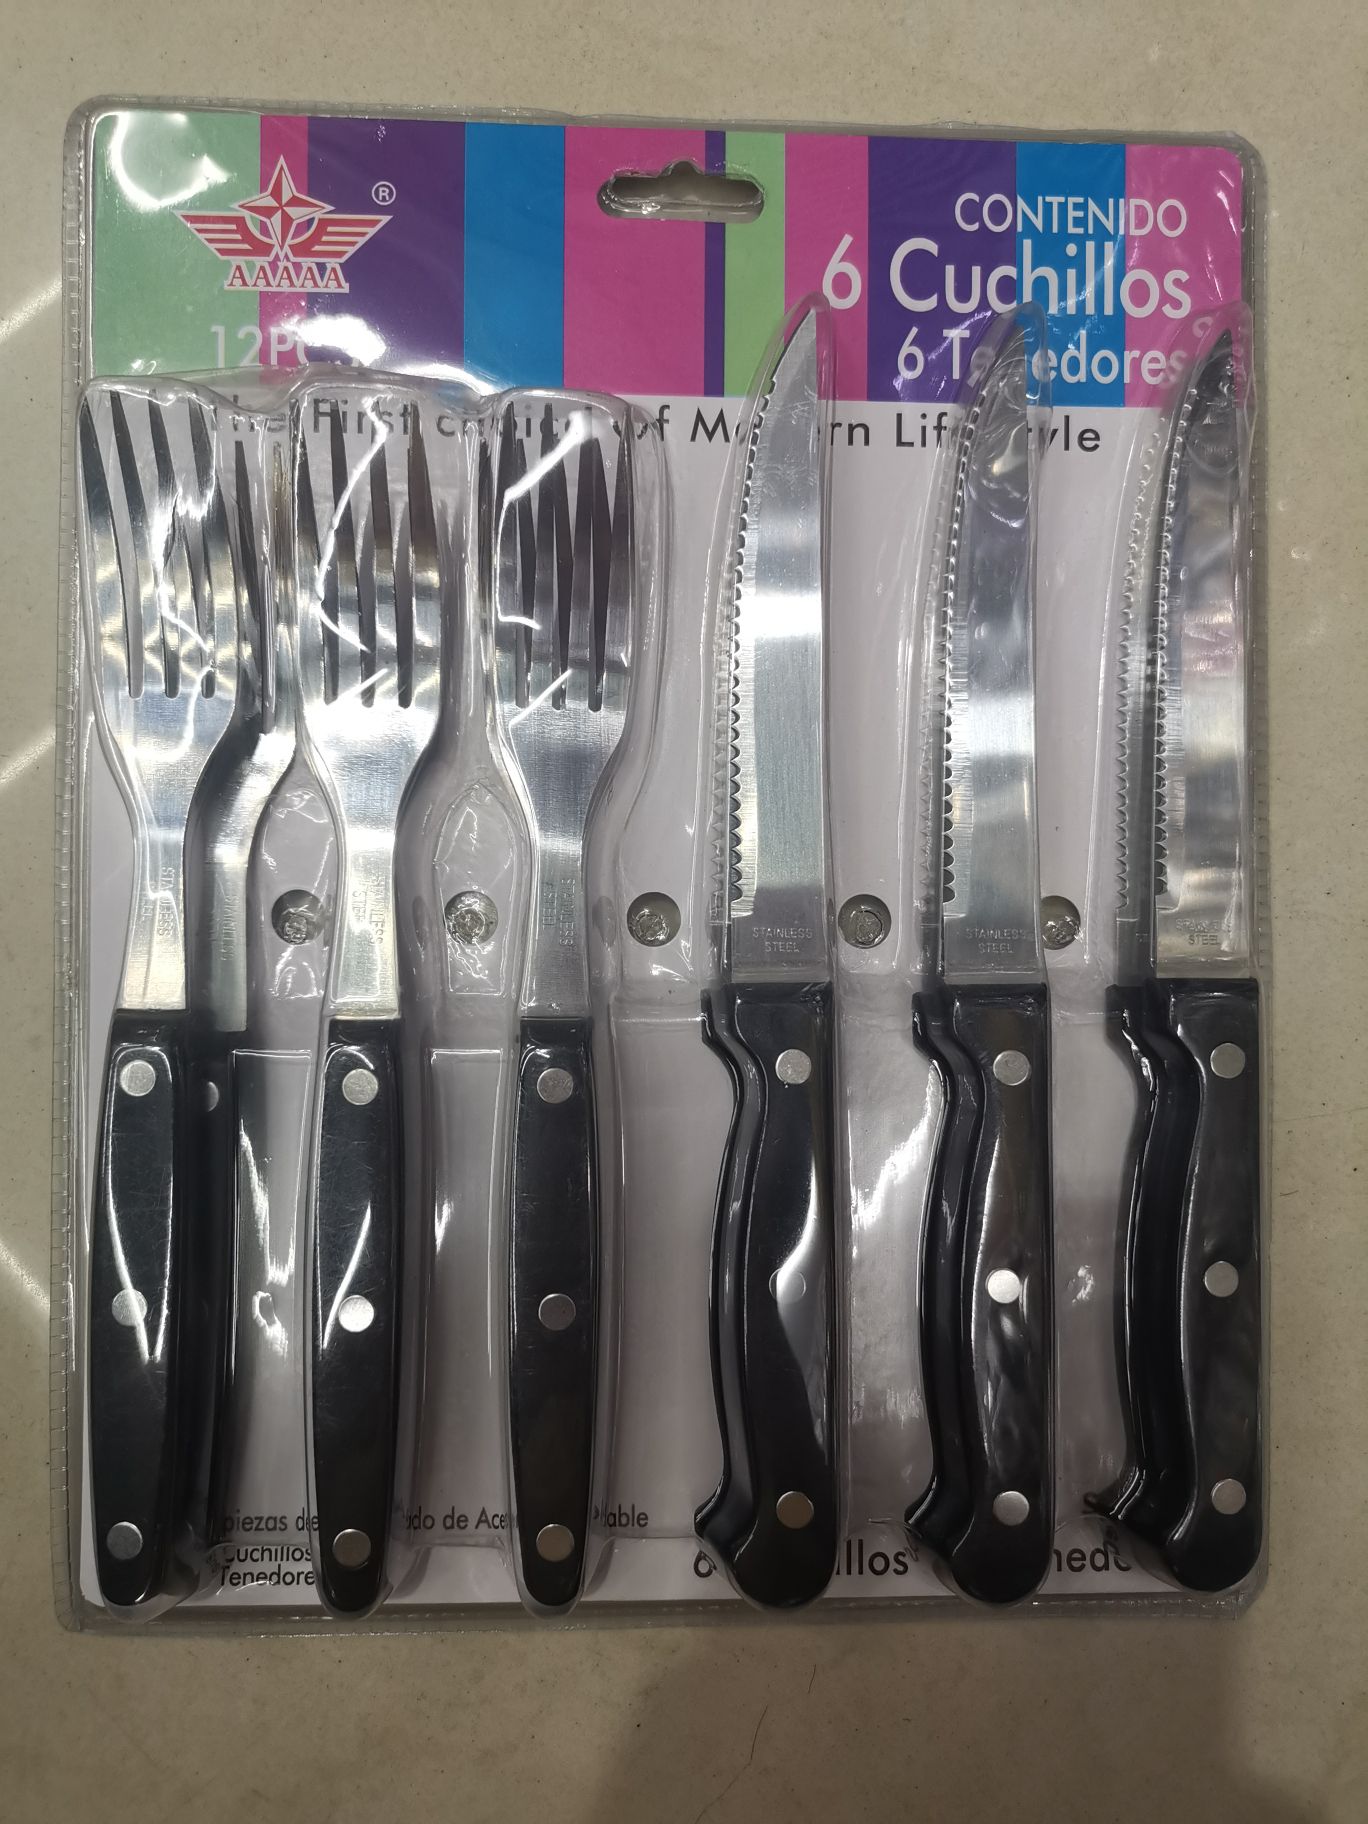 6601  6刀6叉刀叉餐具厨房用品不锈钢刀叉